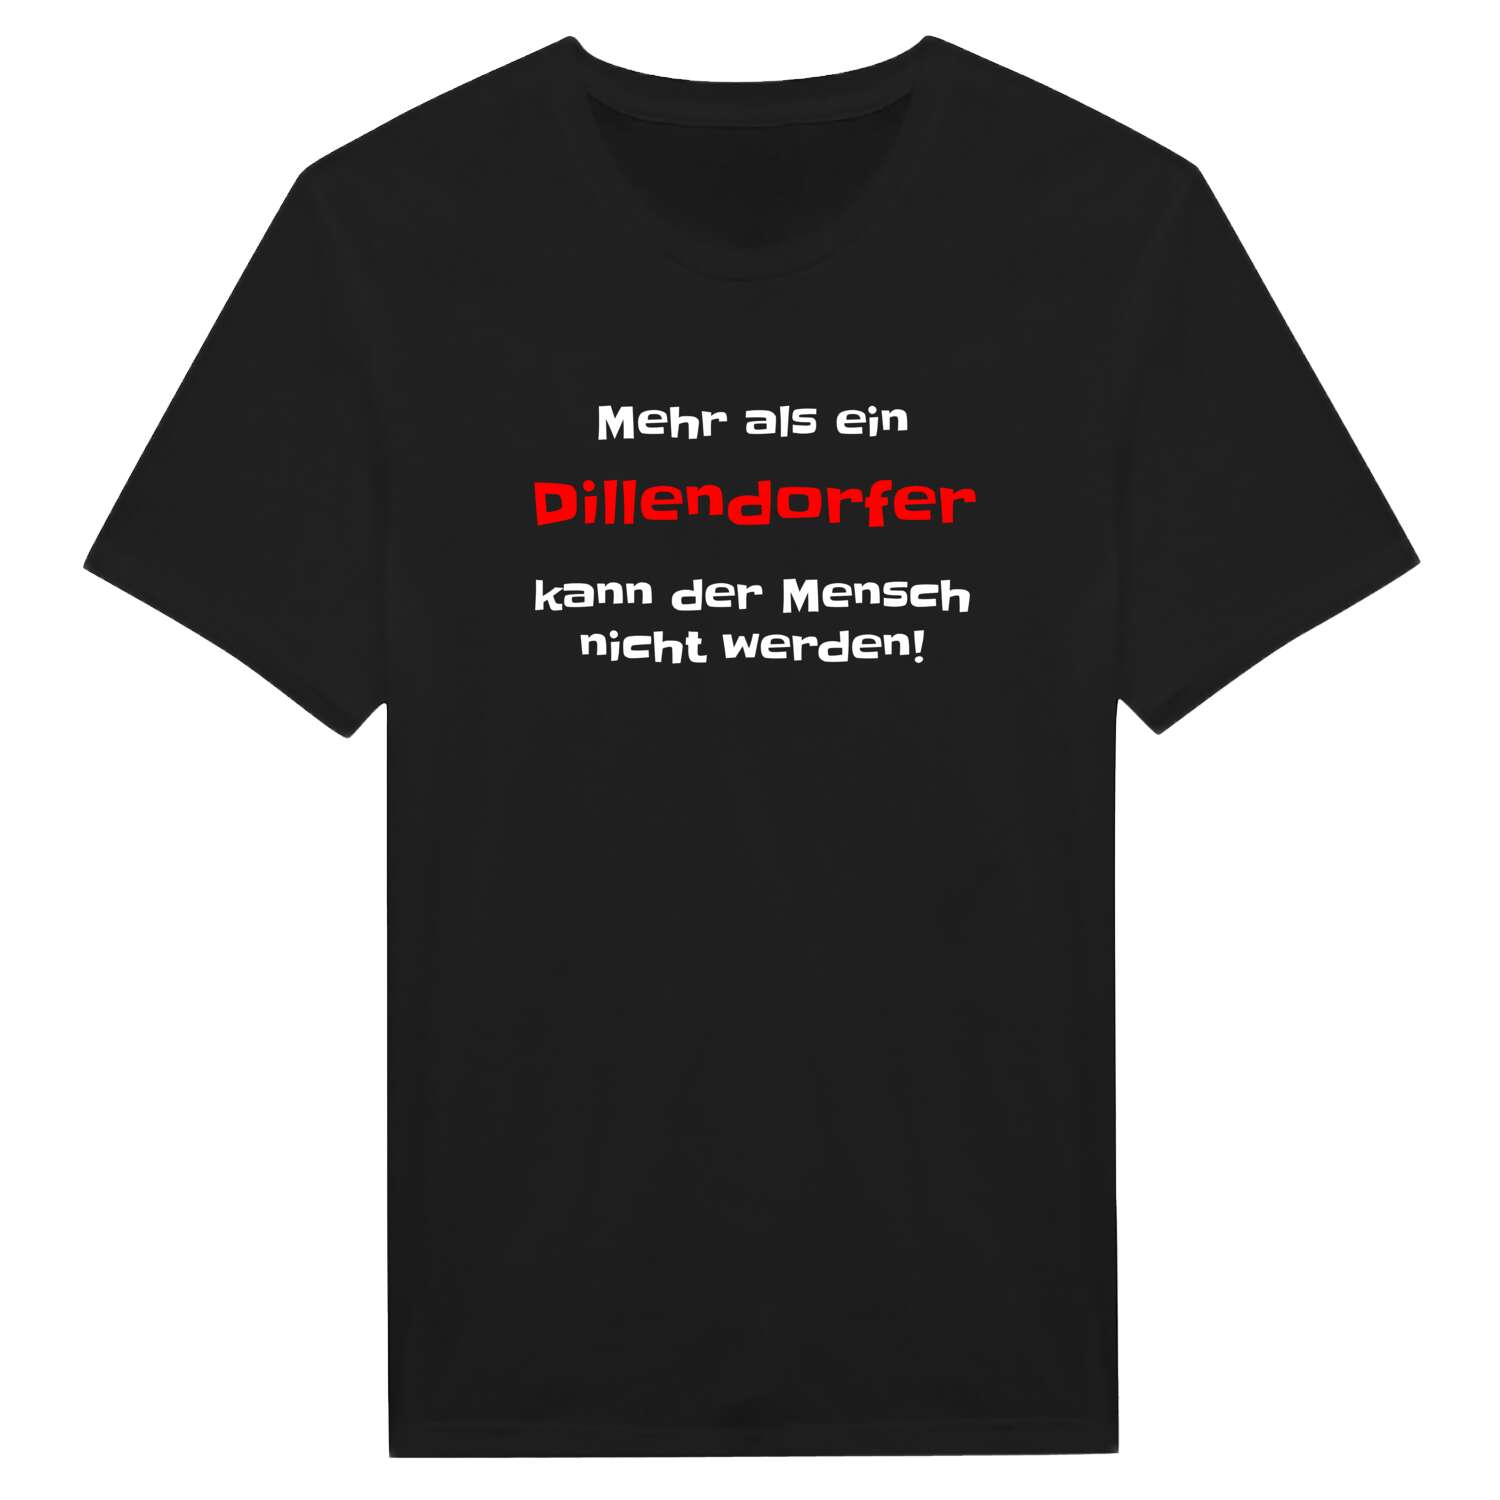 Dillendorf T-Shirt »Mehr als ein«